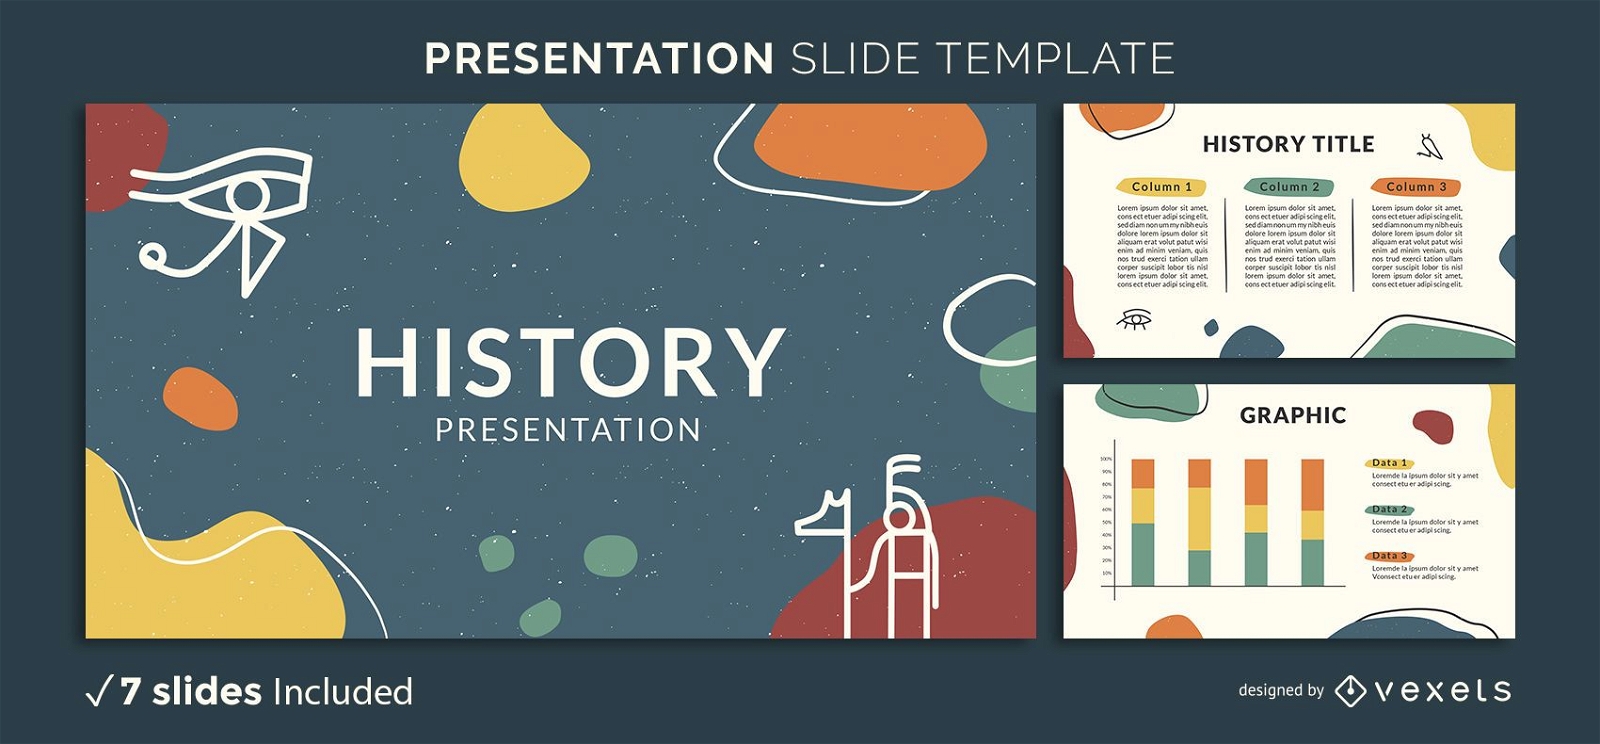 best slides for history presentation